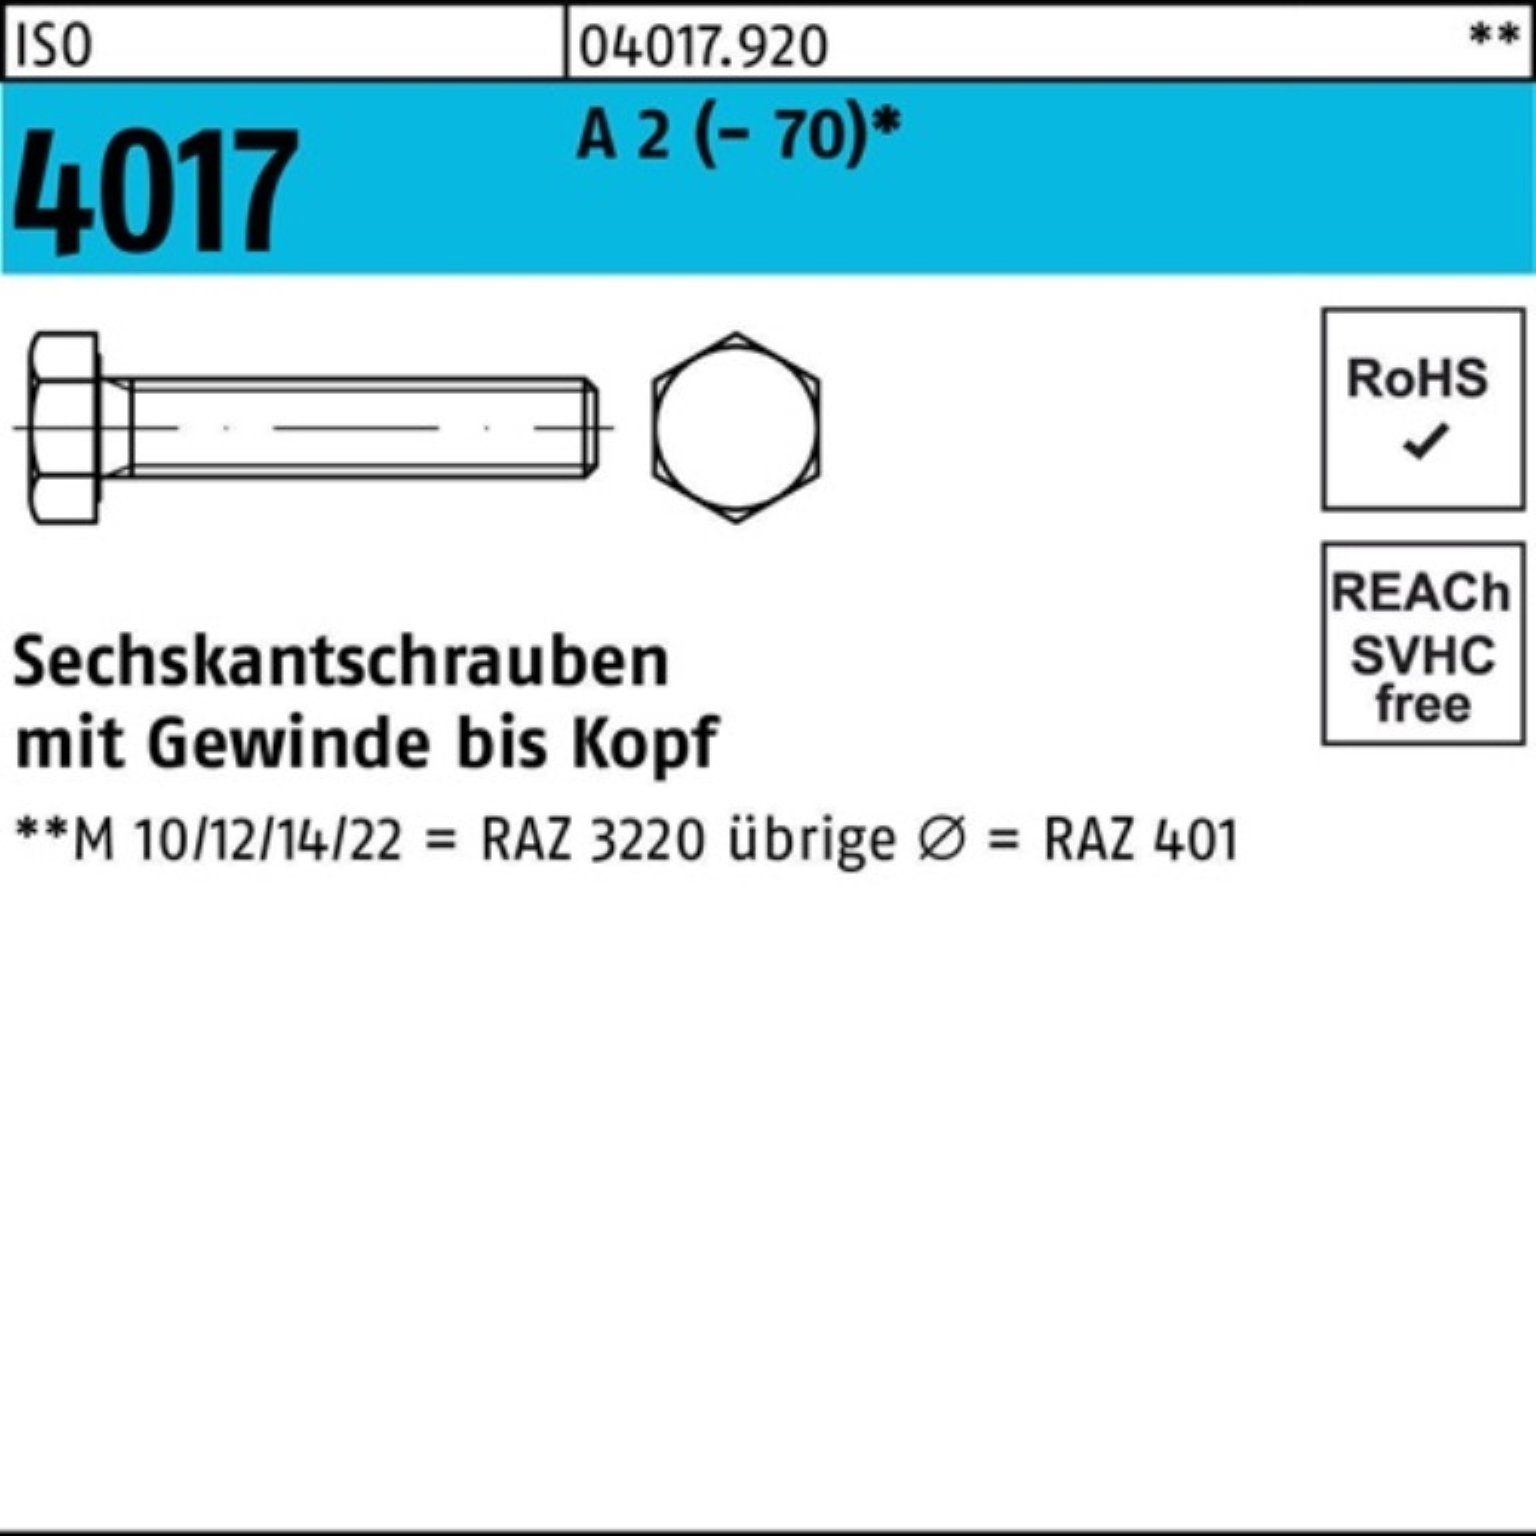 Bufab Sechskantschraube 100er Pack Sechskantschraube ISO 4017 VG M8x 60 A 2 (70) 100 Stück